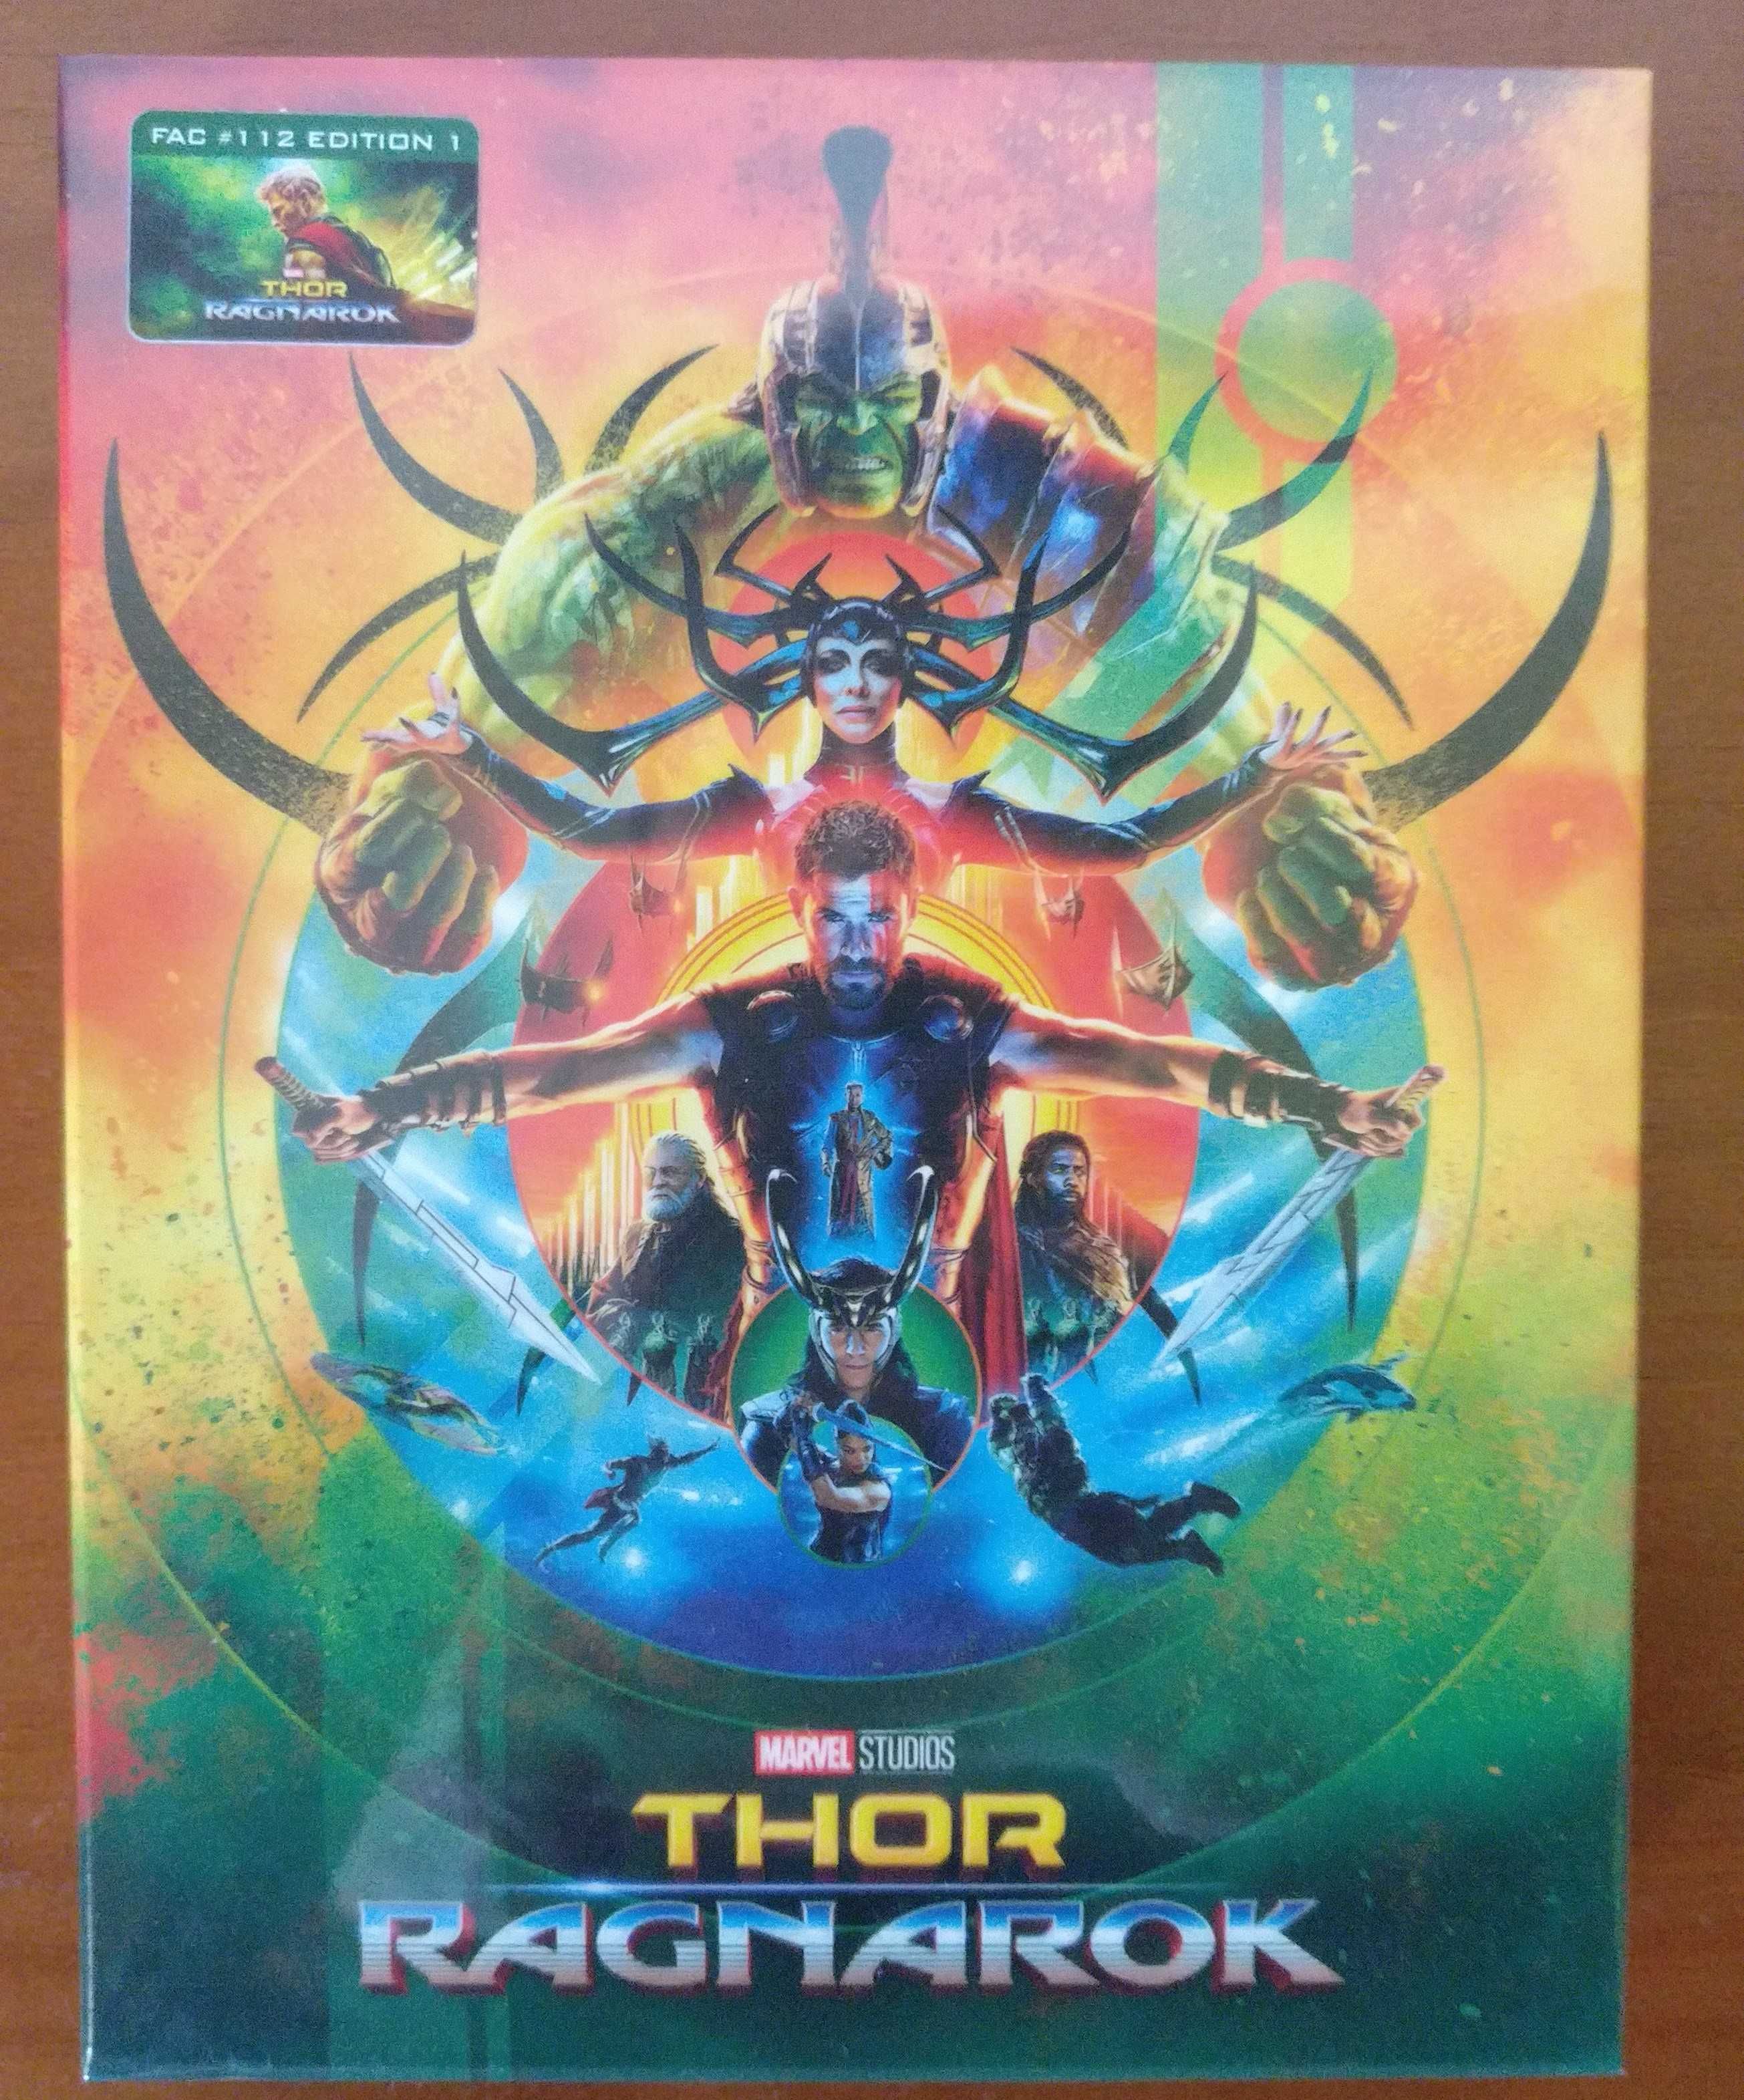 Bluray 3D + 2D Thor Ragnarok Filmarena FAC#112 Edição 1